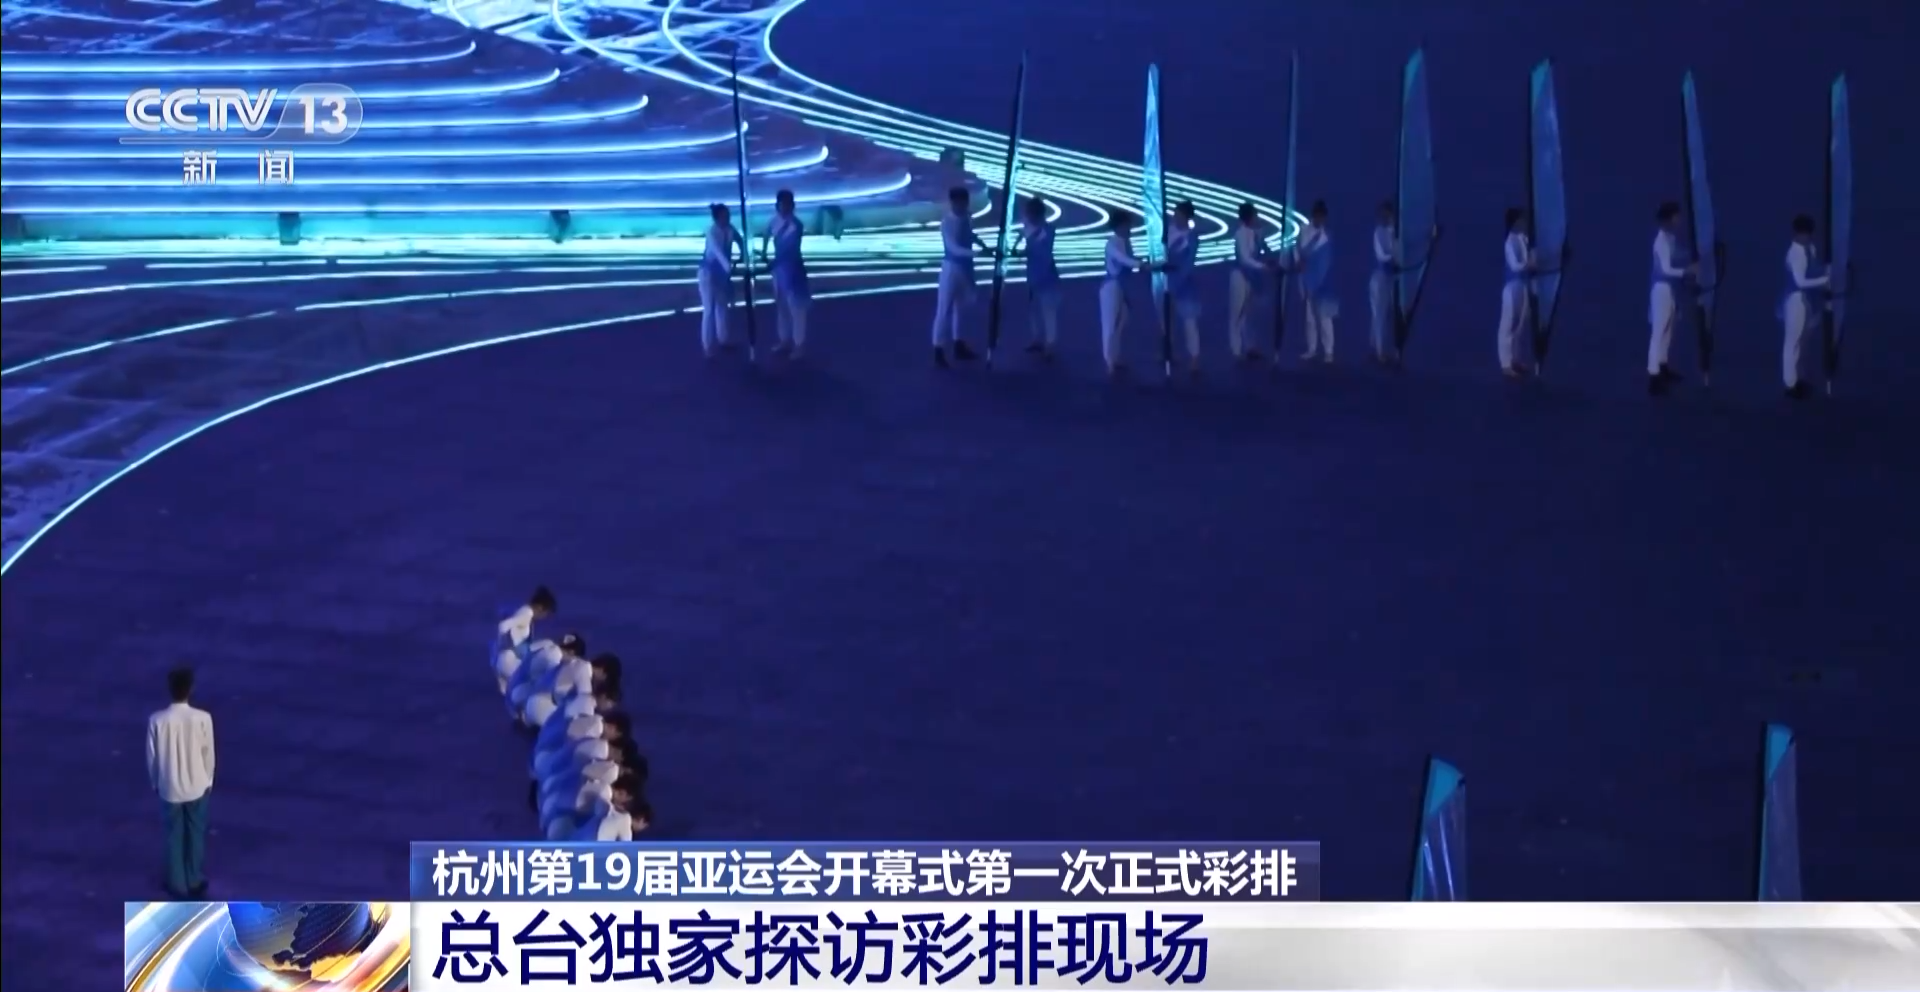 杭州亚运会开幕式第一次正式彩排顺利完成 点火方式创意满满